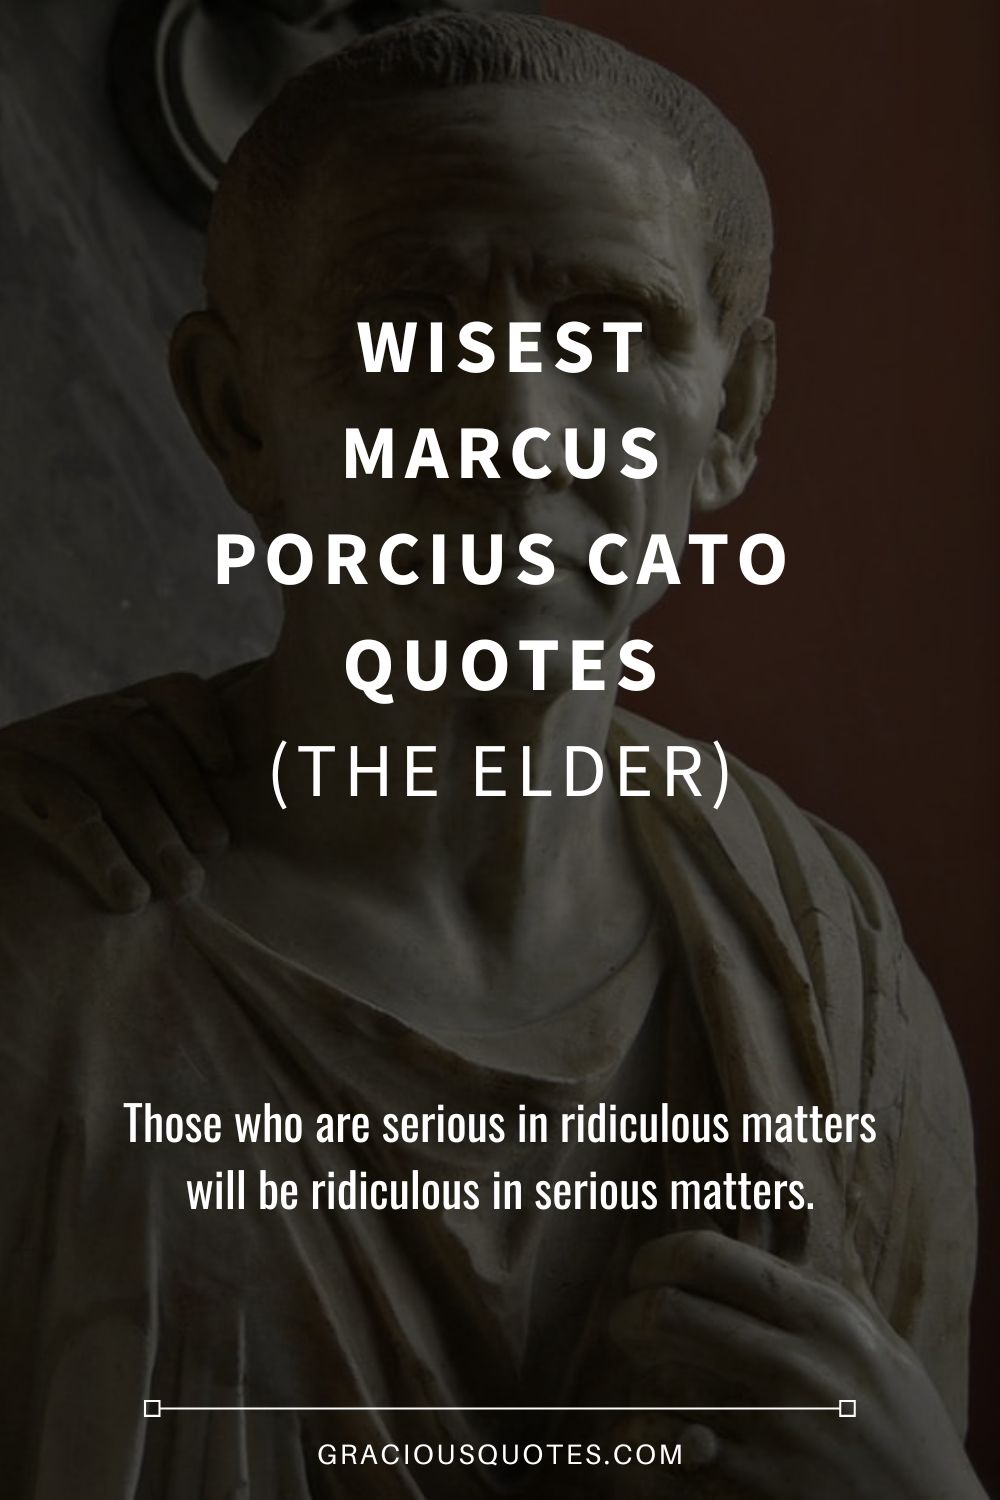 Wisest Marcus Porcius Cato Quotes (THE ELDER) - Gracious Quotes